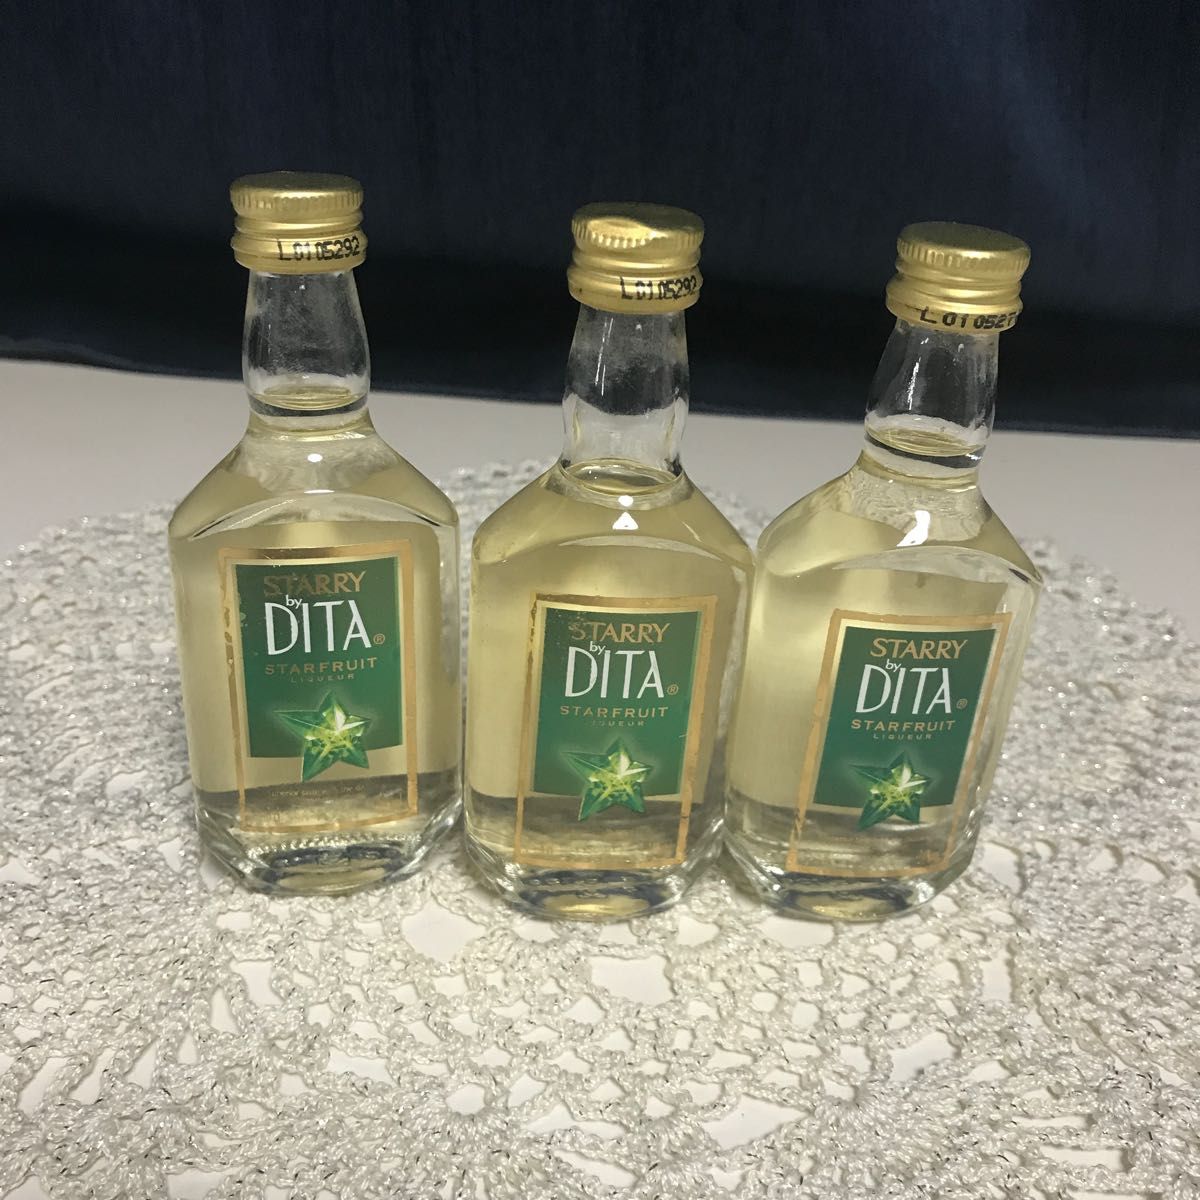 DITA ディタ 50ml フランス古酒ミニボトル - ウイスキー